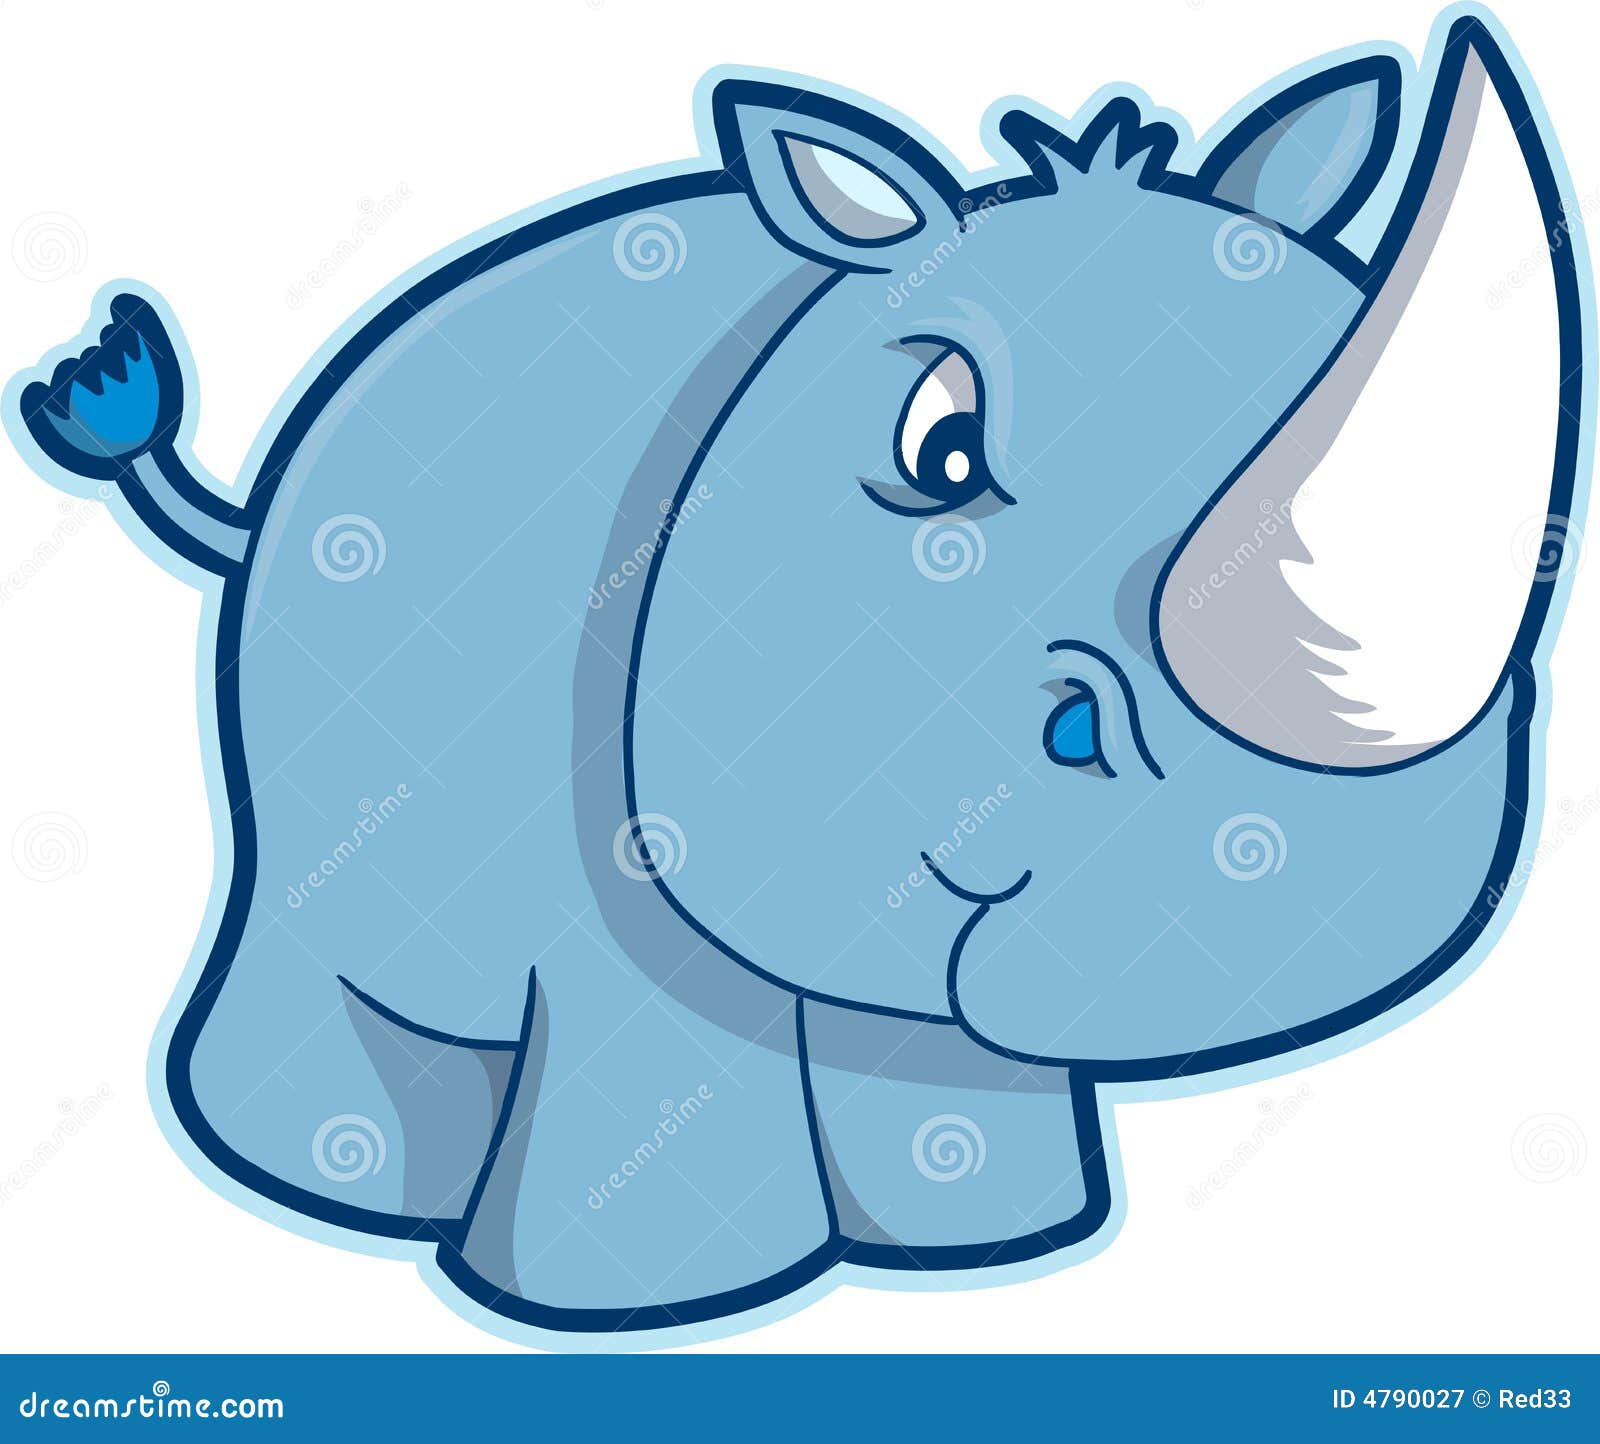 free baby rhino clipart - photo #38